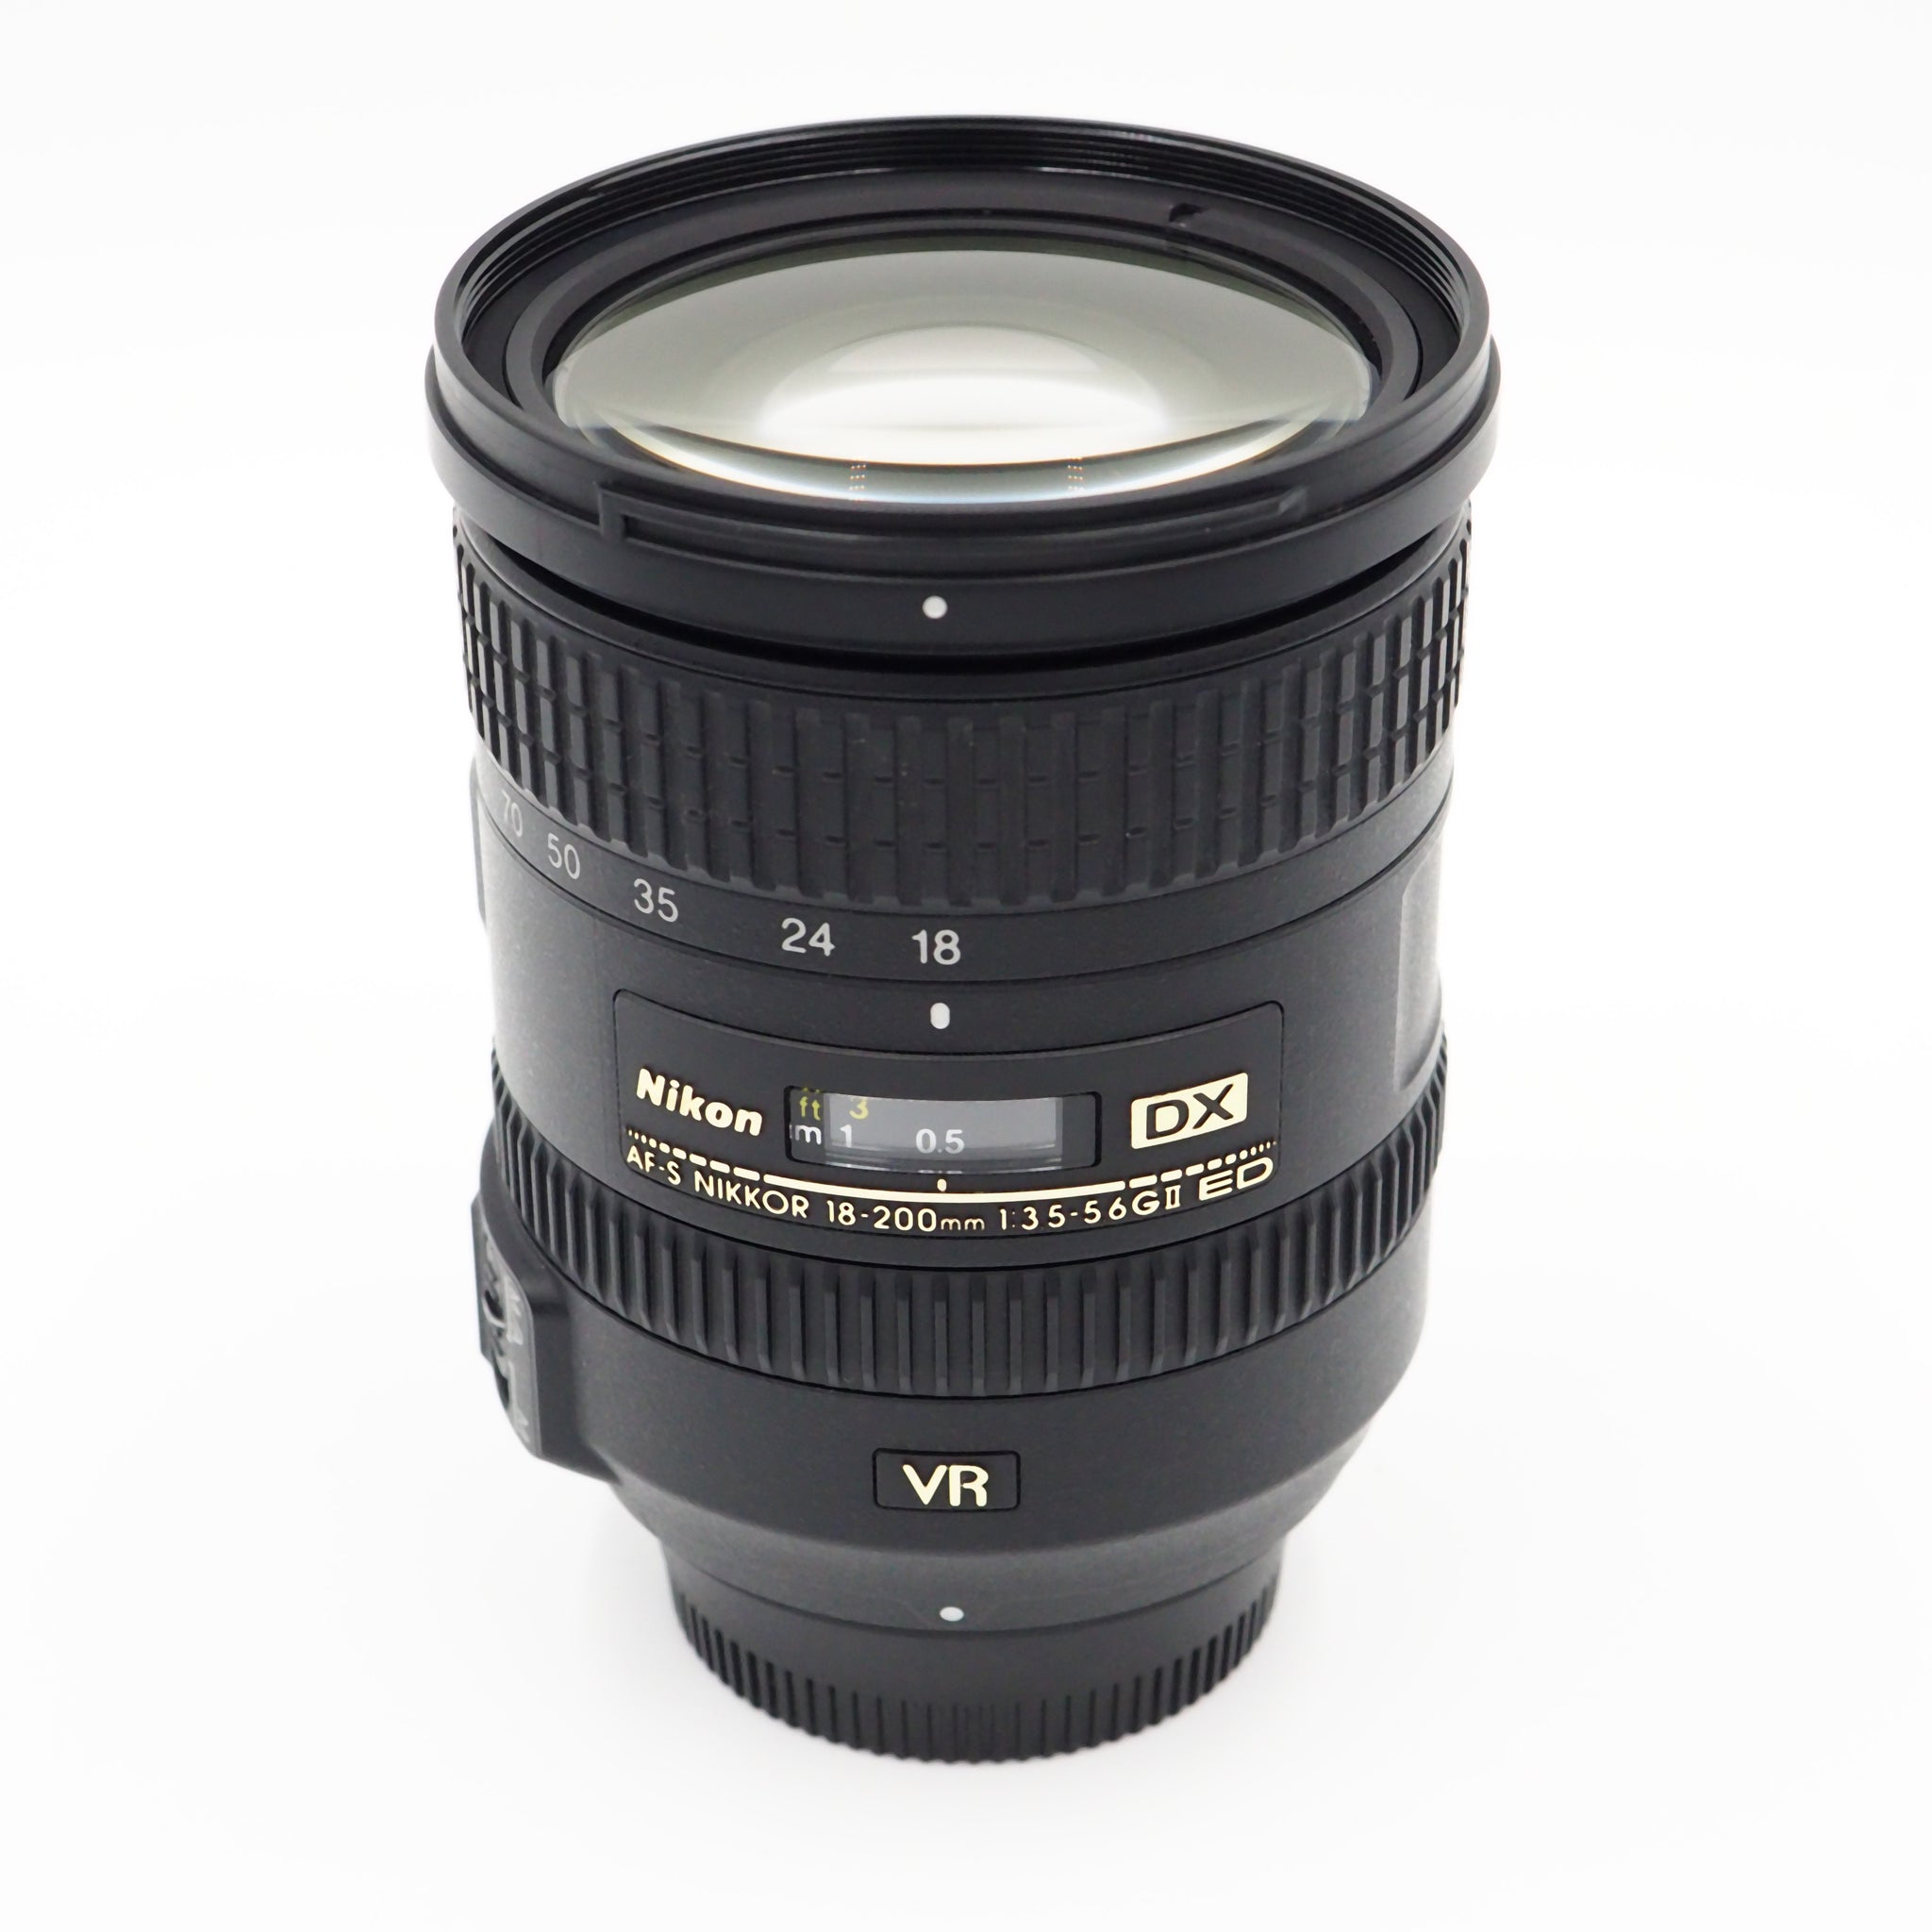 Nikon AF-S DX NIKKOR 18-200mm f/3.5-5.6G ED VR II Lens - USED